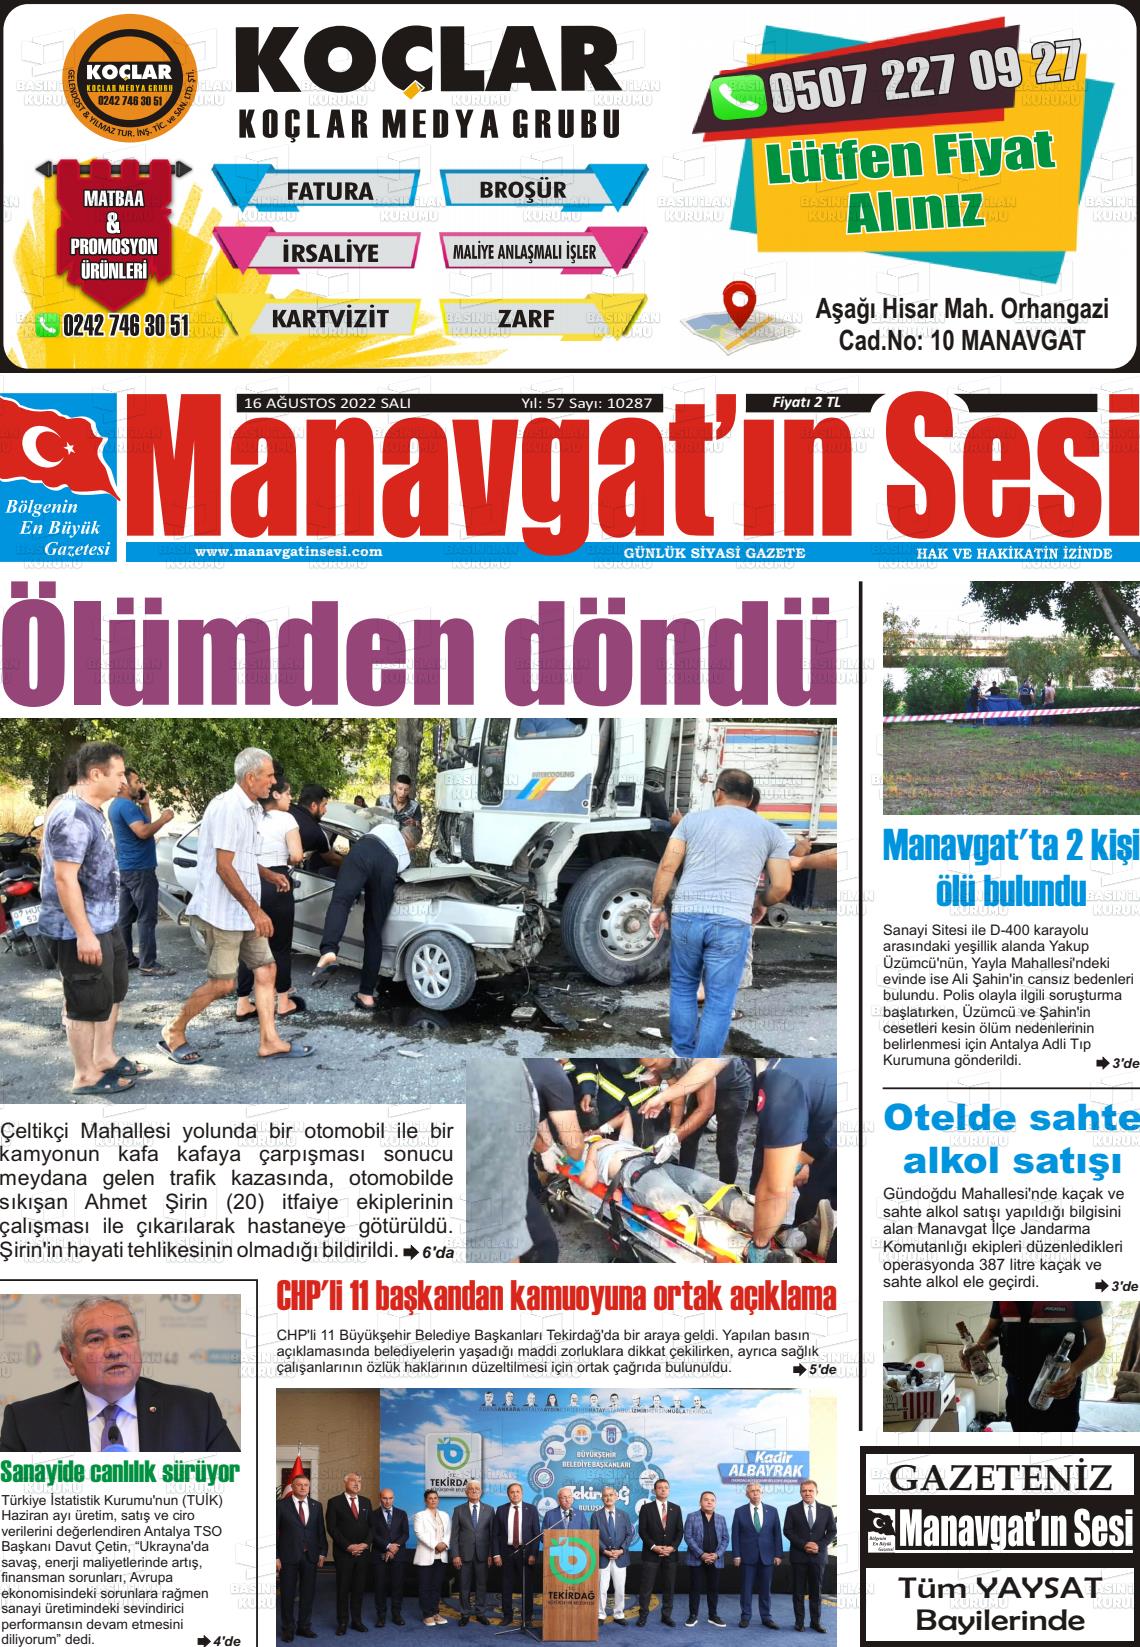 16 Ağustos 2022 Manavgat'ın Sesi Gazete Manşeti